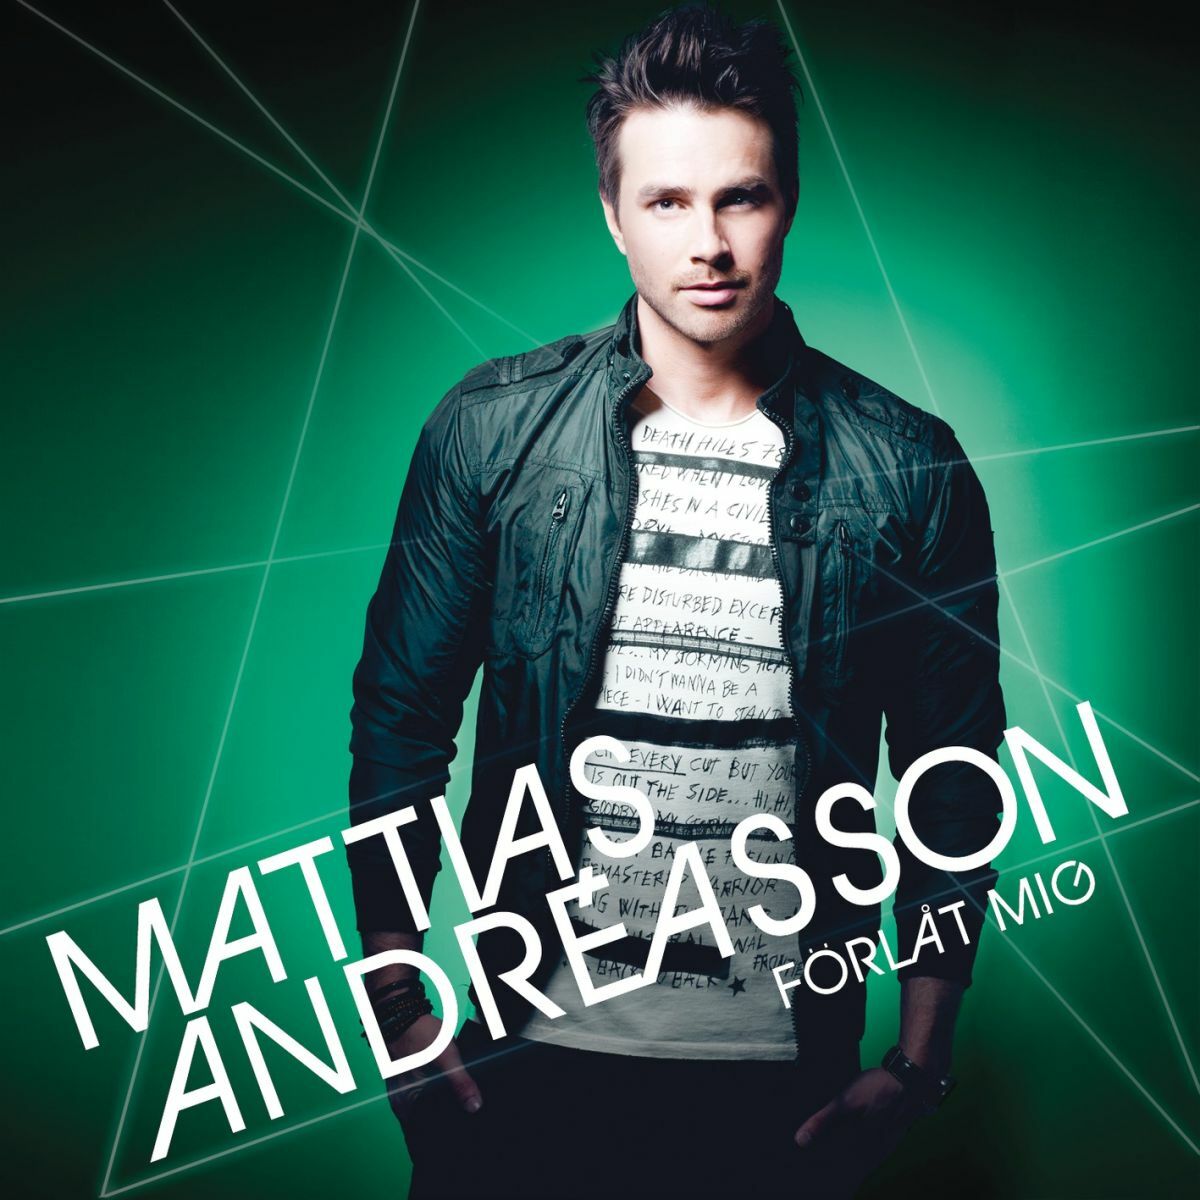 Mattias Andréasson — Förlåt mig cover artwork